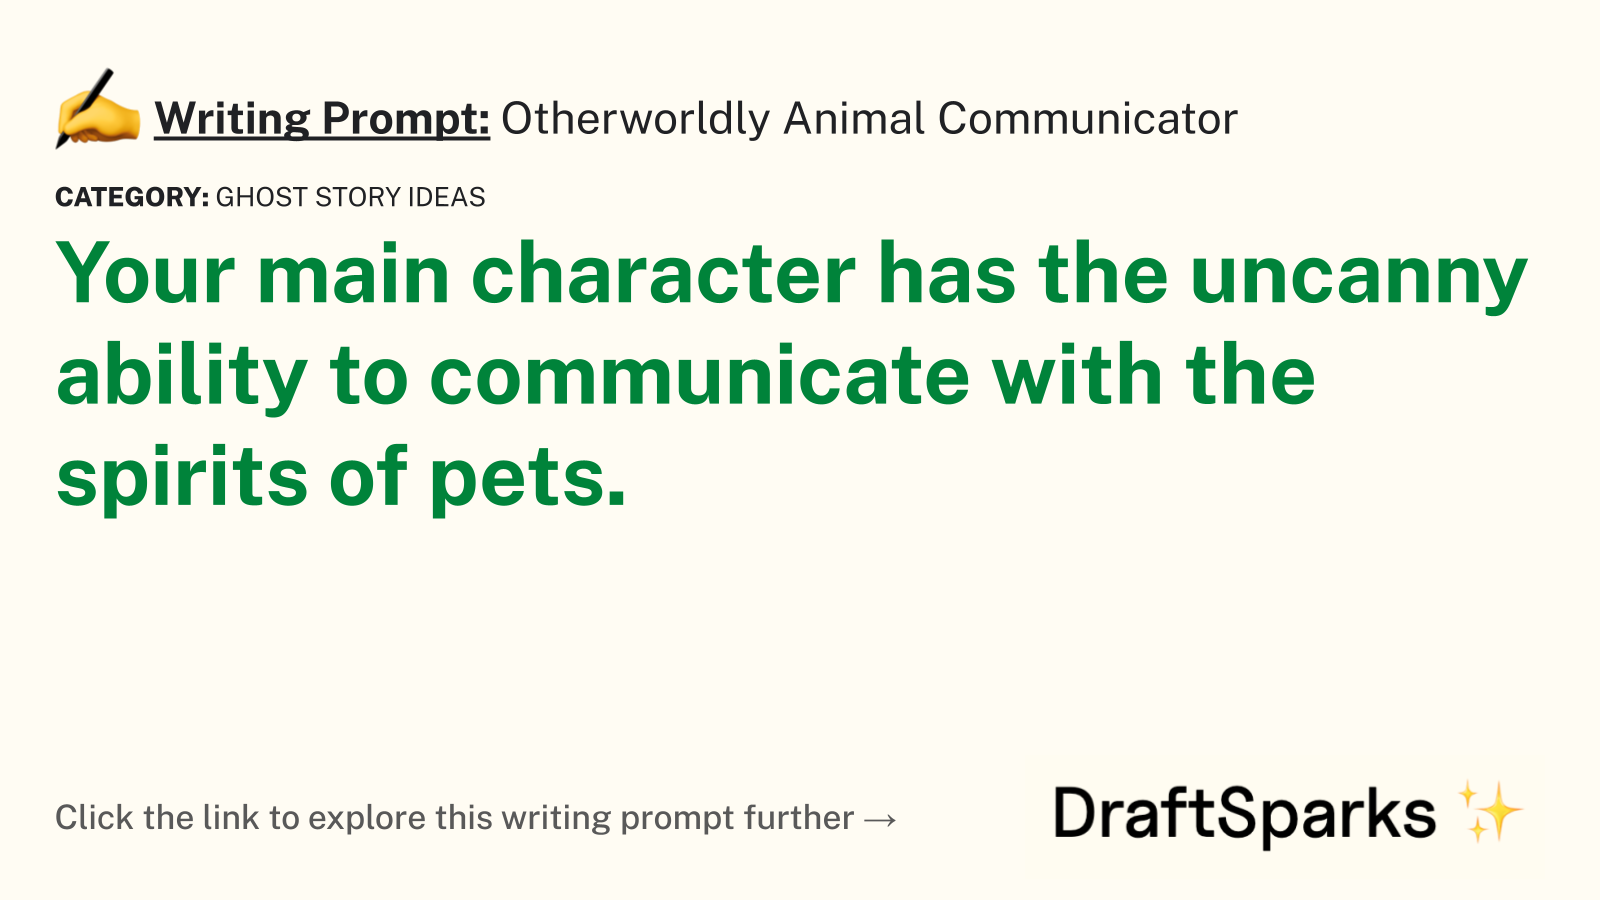 Otherworldly Animal Communicator